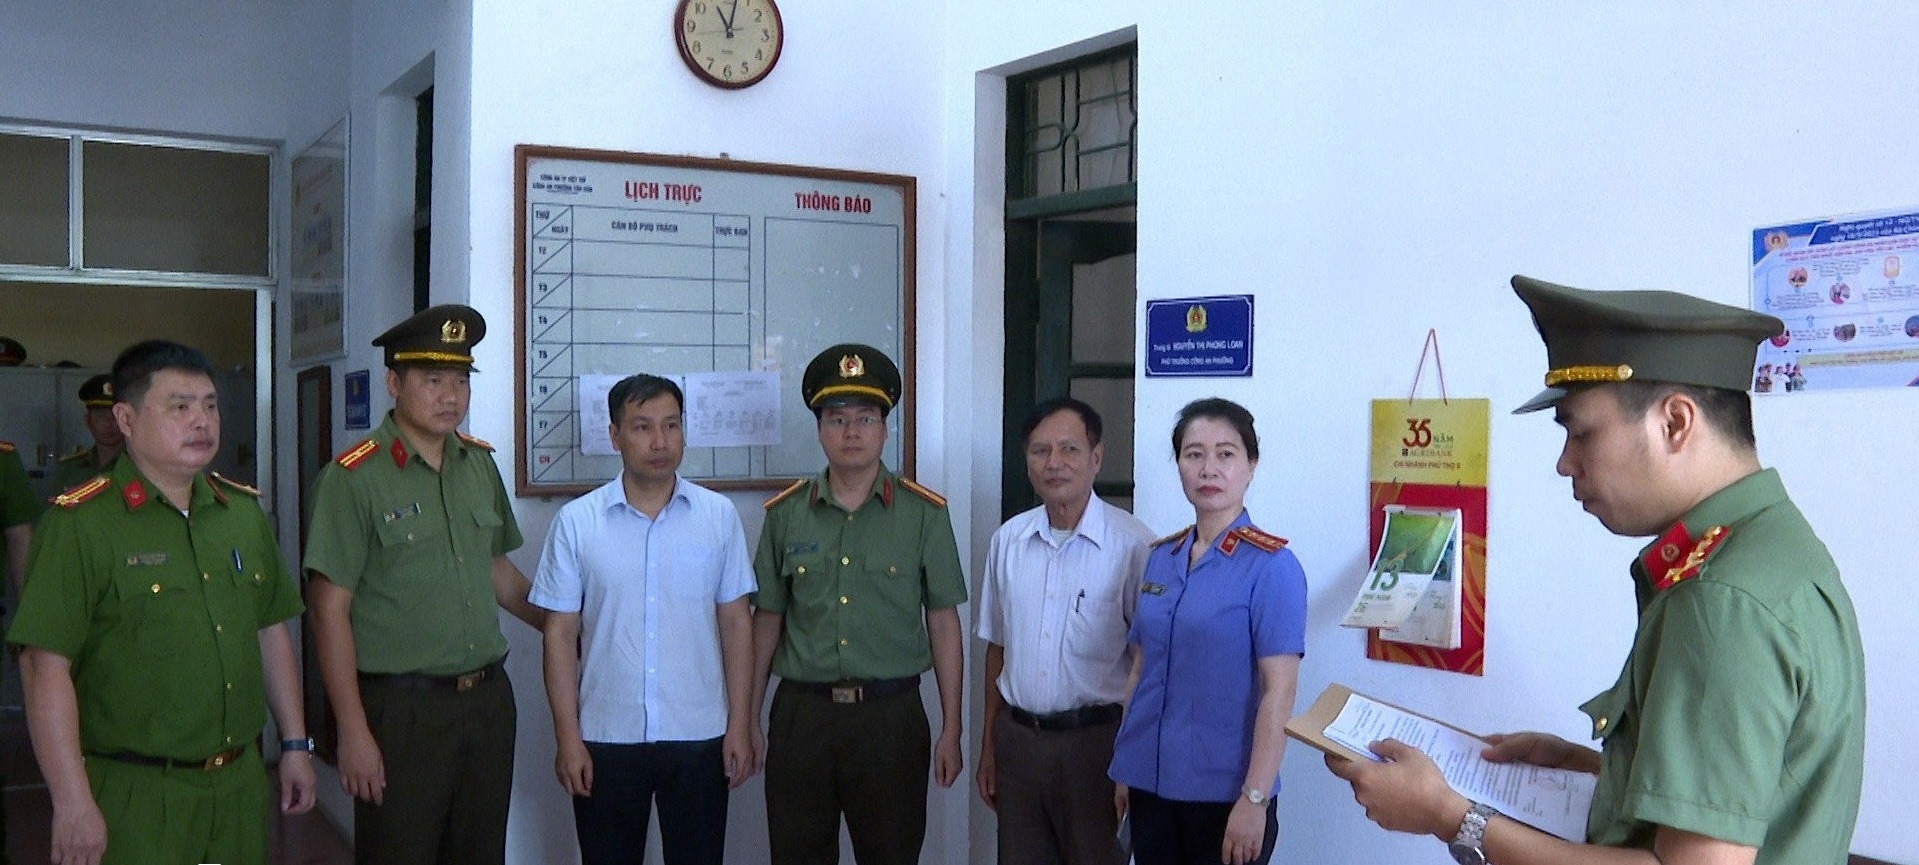 Phú Thọ bắt tạm giam hàng loạt cán bộ lợi dụng chức vụ khi thi hành công vụ - Ảnh 1.